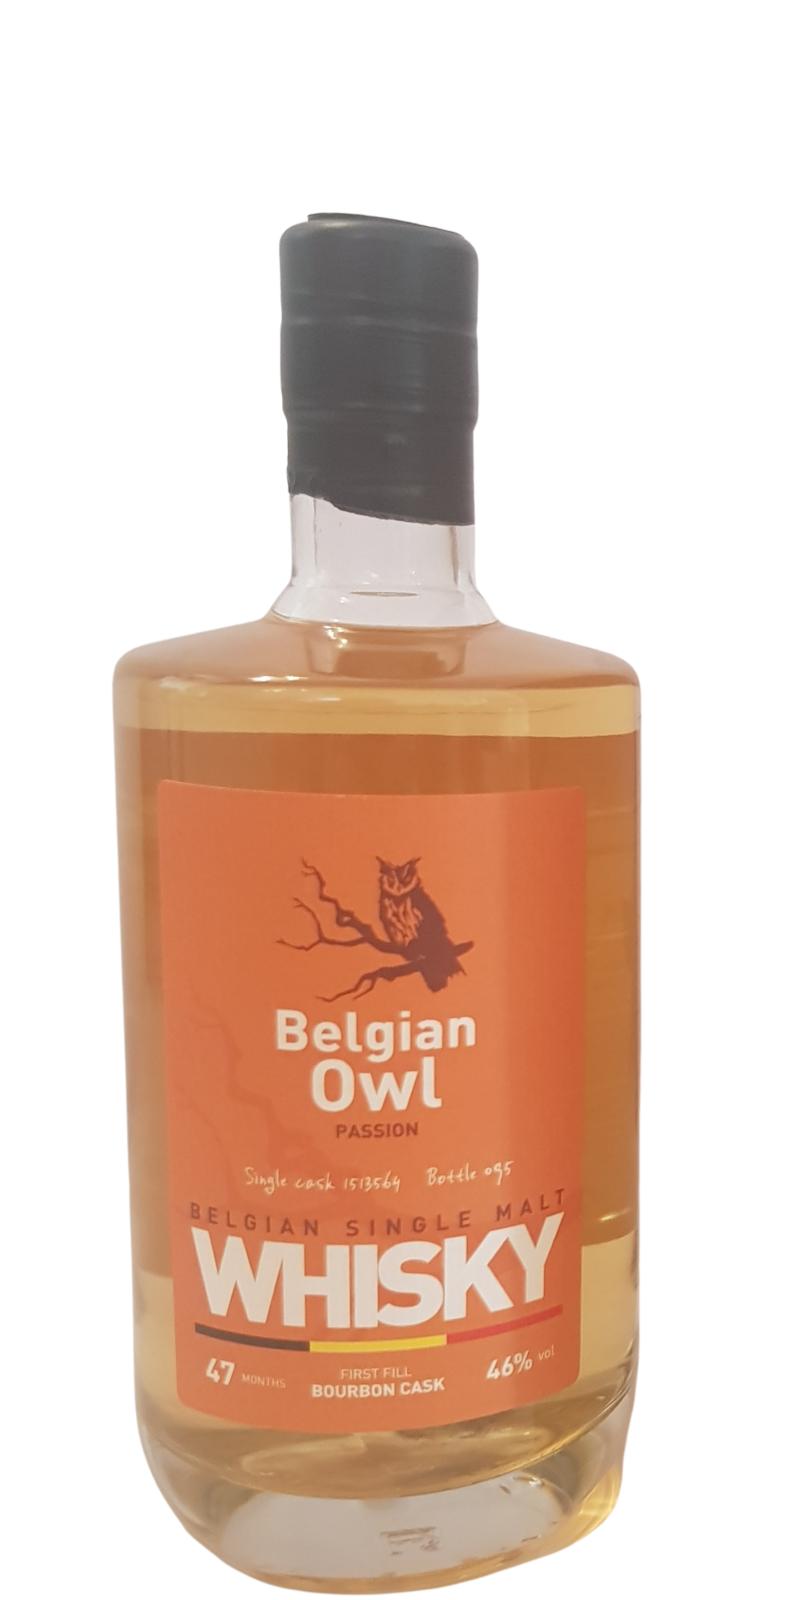 The Belgian Owl 47 Months Bourbon Cask 46% 500ml